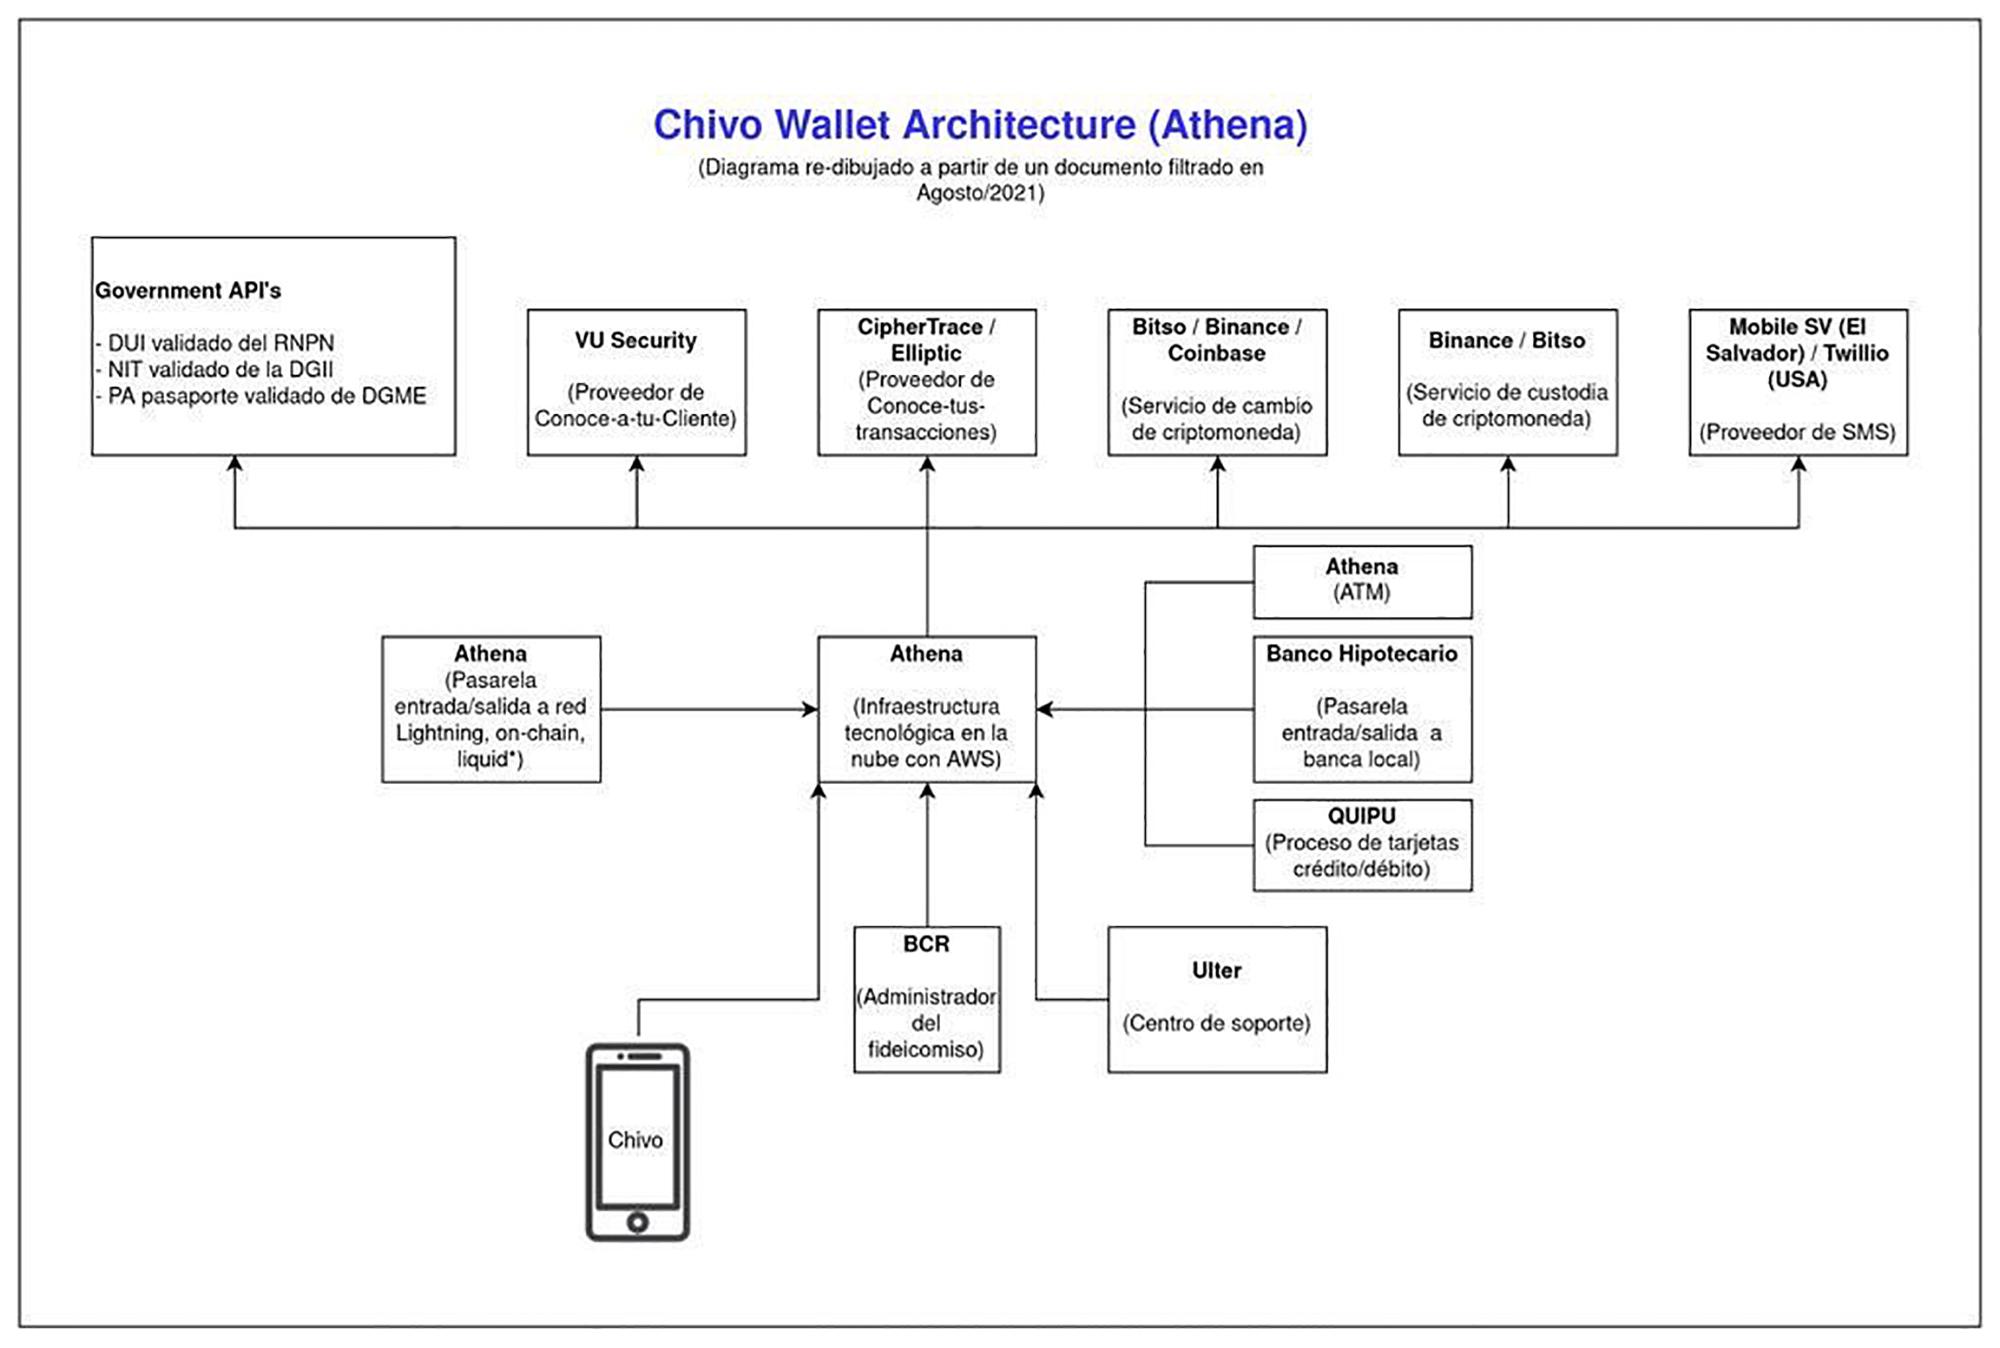 Este esquema del funcionamiento de la Chivo Wallet se filtró en agosto. El 19 de noviembre, Eric Gravengaard, CEO de Athena, confirmó que es correcto al editor de la revista Bitcoin Magazine.